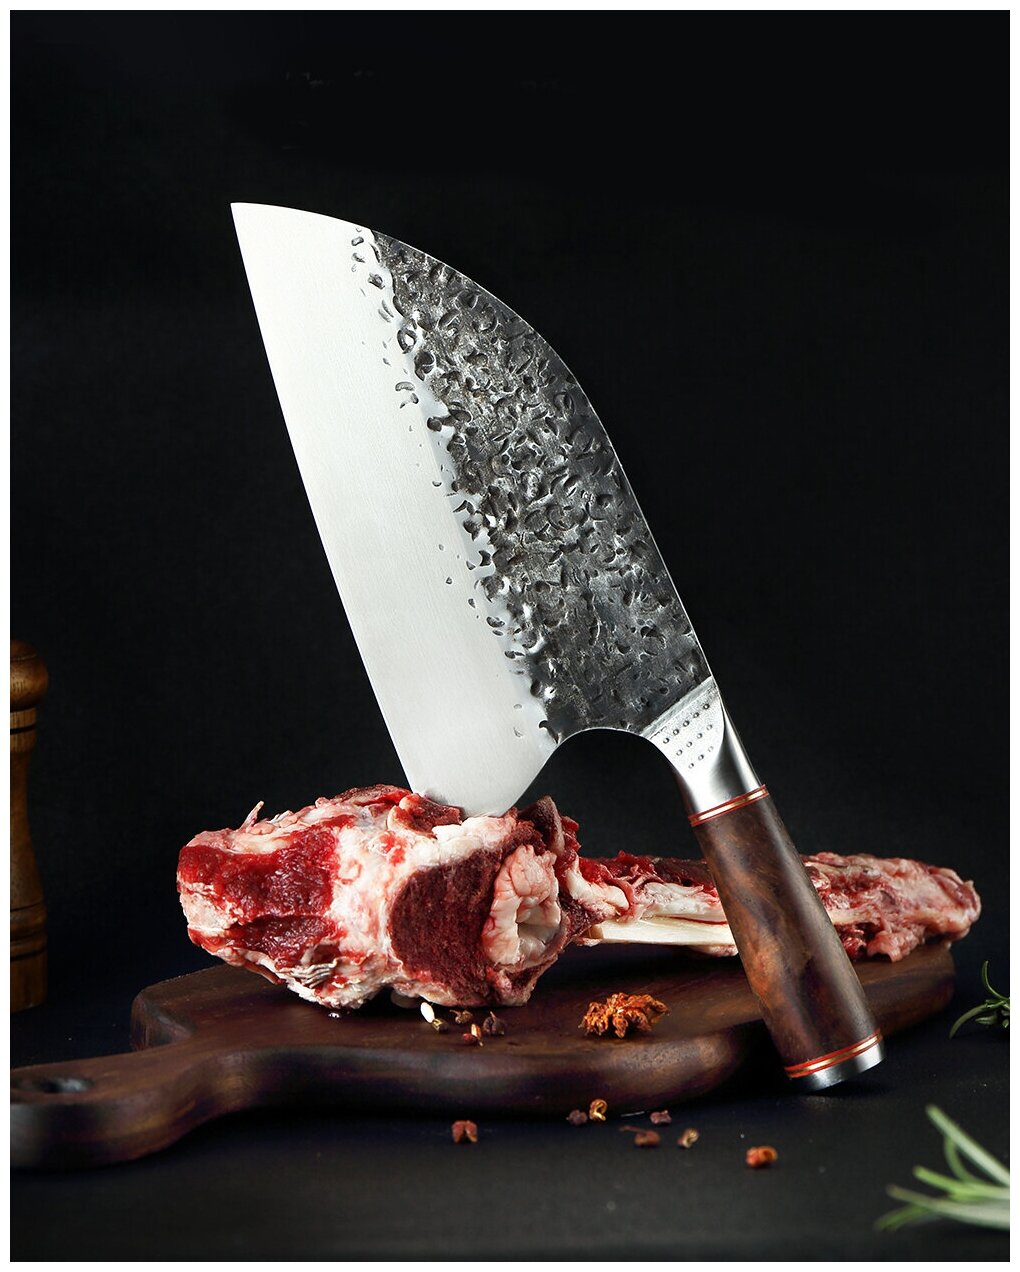 Сербский нож Slicer 205 мм/нож топорик/нож для мяса/нож для барбекю/нож кухонный